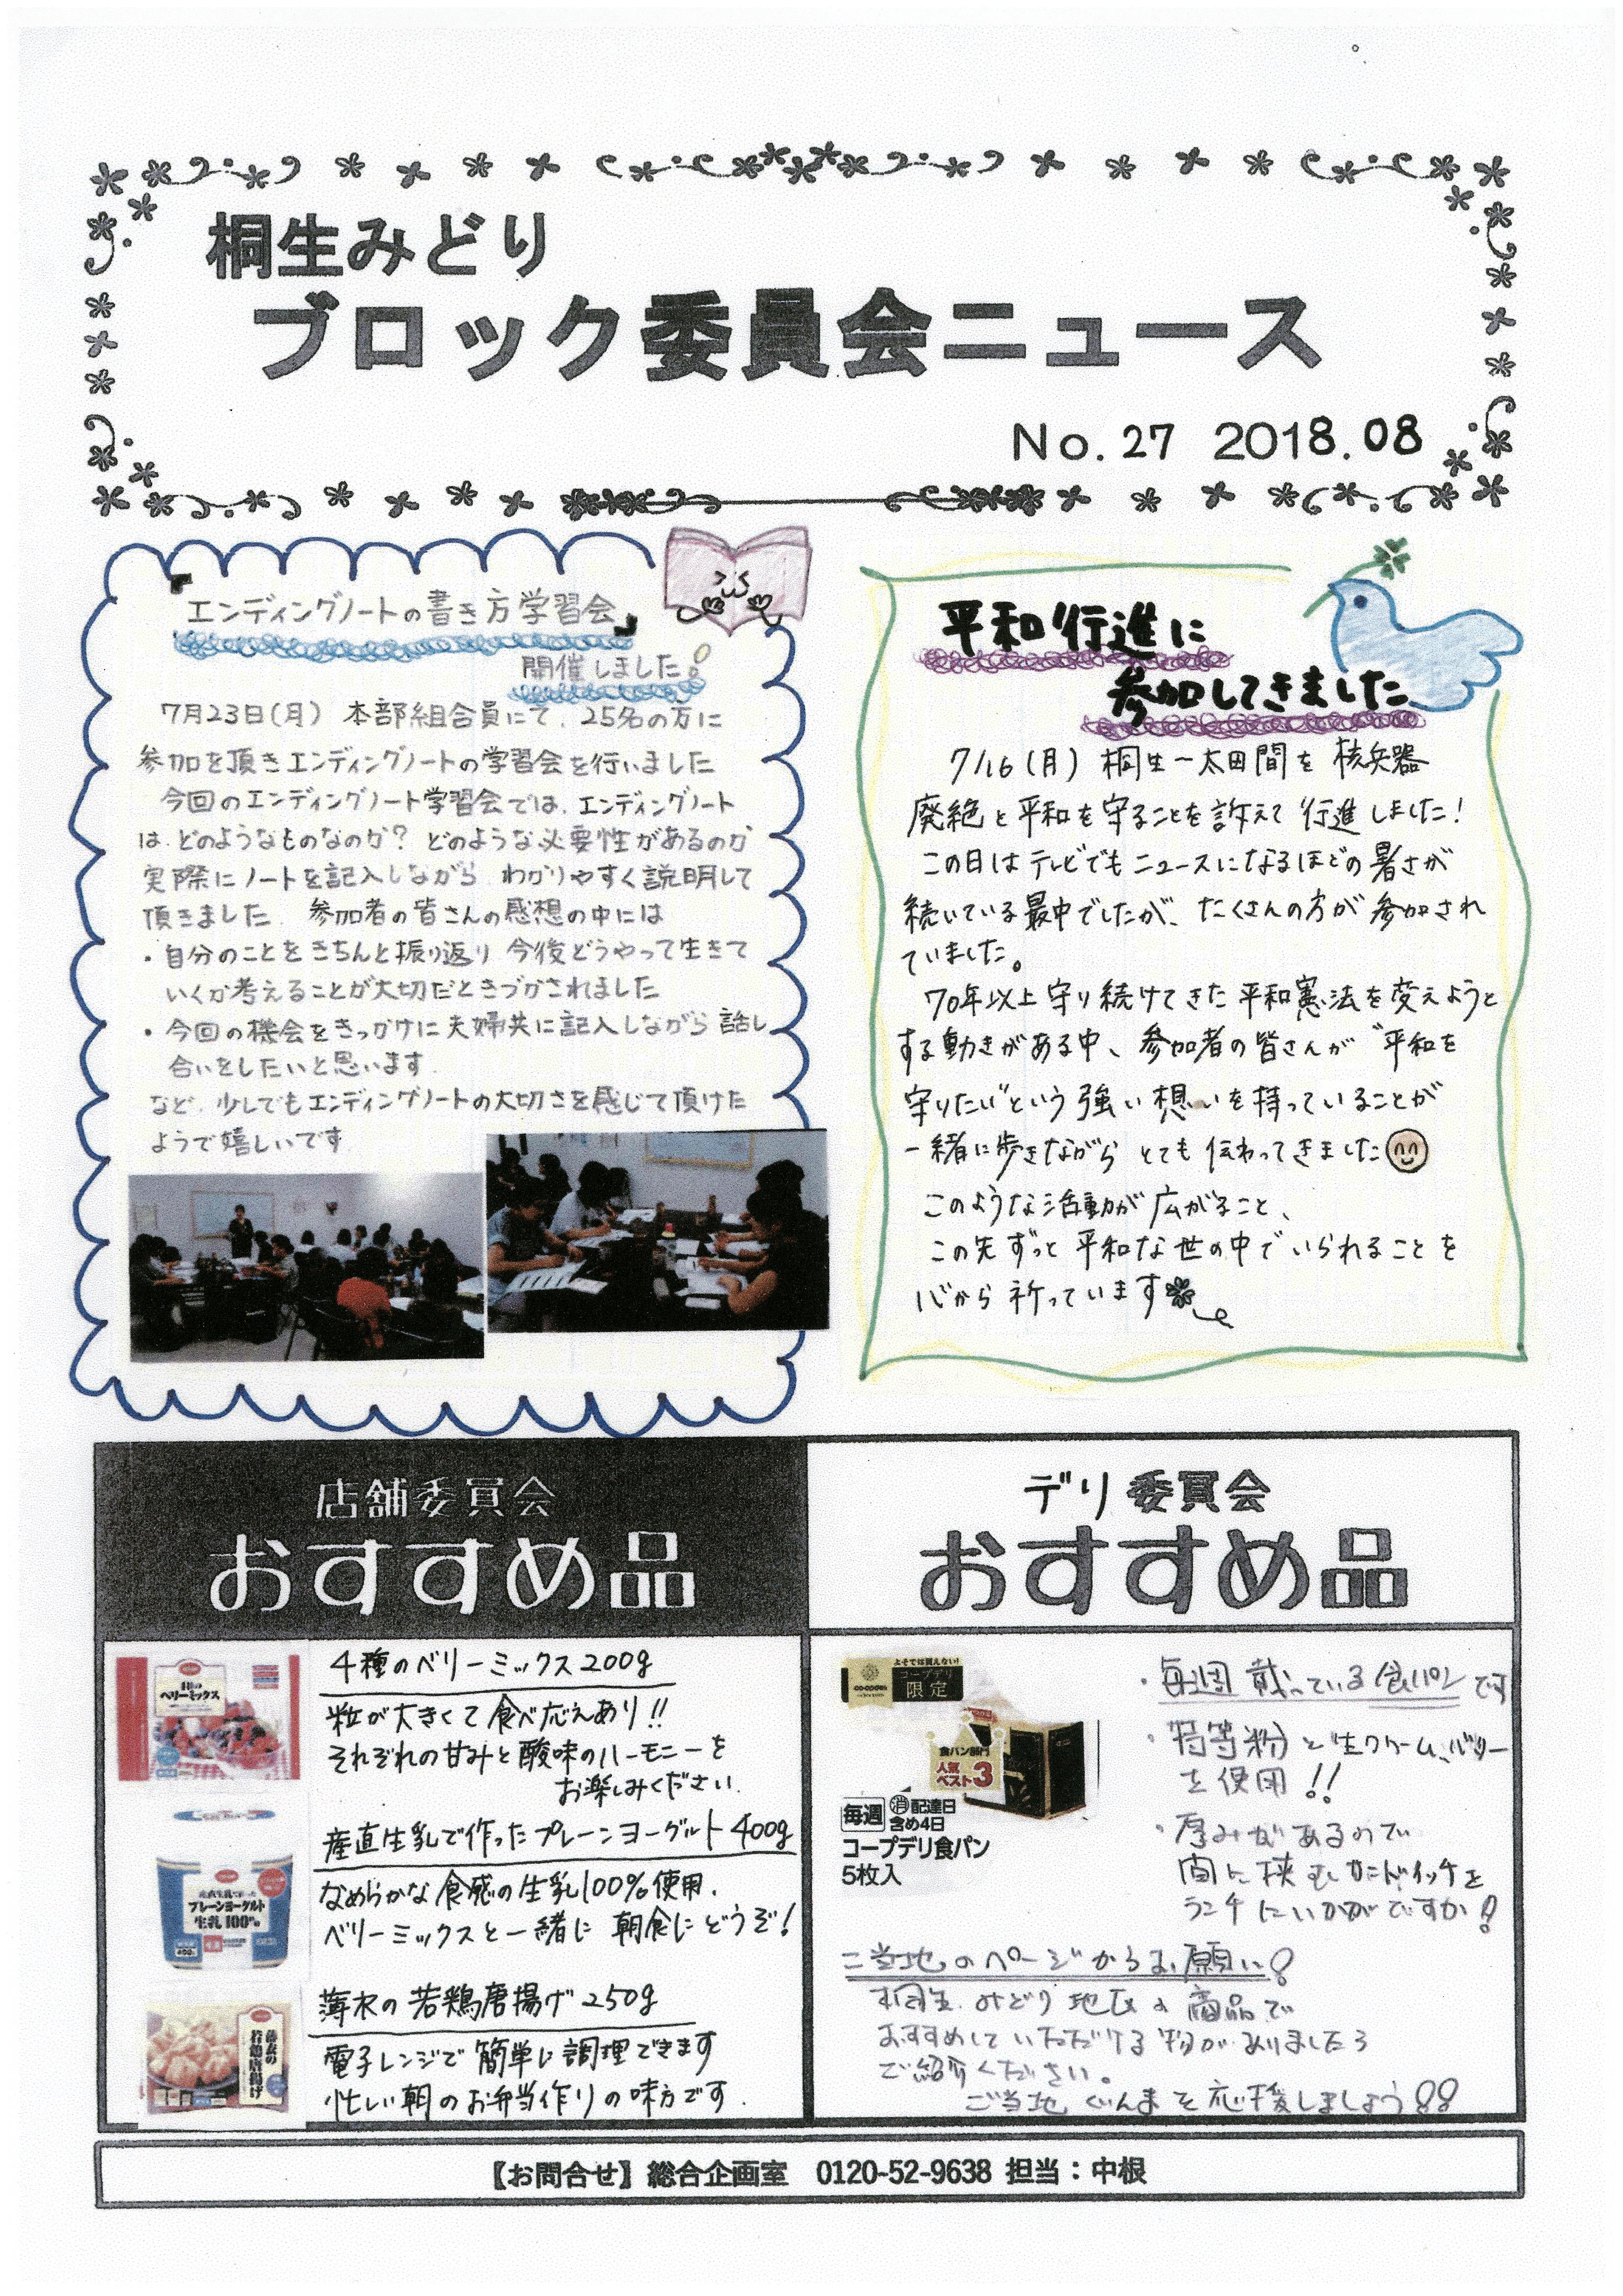 https://gunma.coopnet.or.jp/event/ev/ev_info/img/1808_b4_news_01.jpg